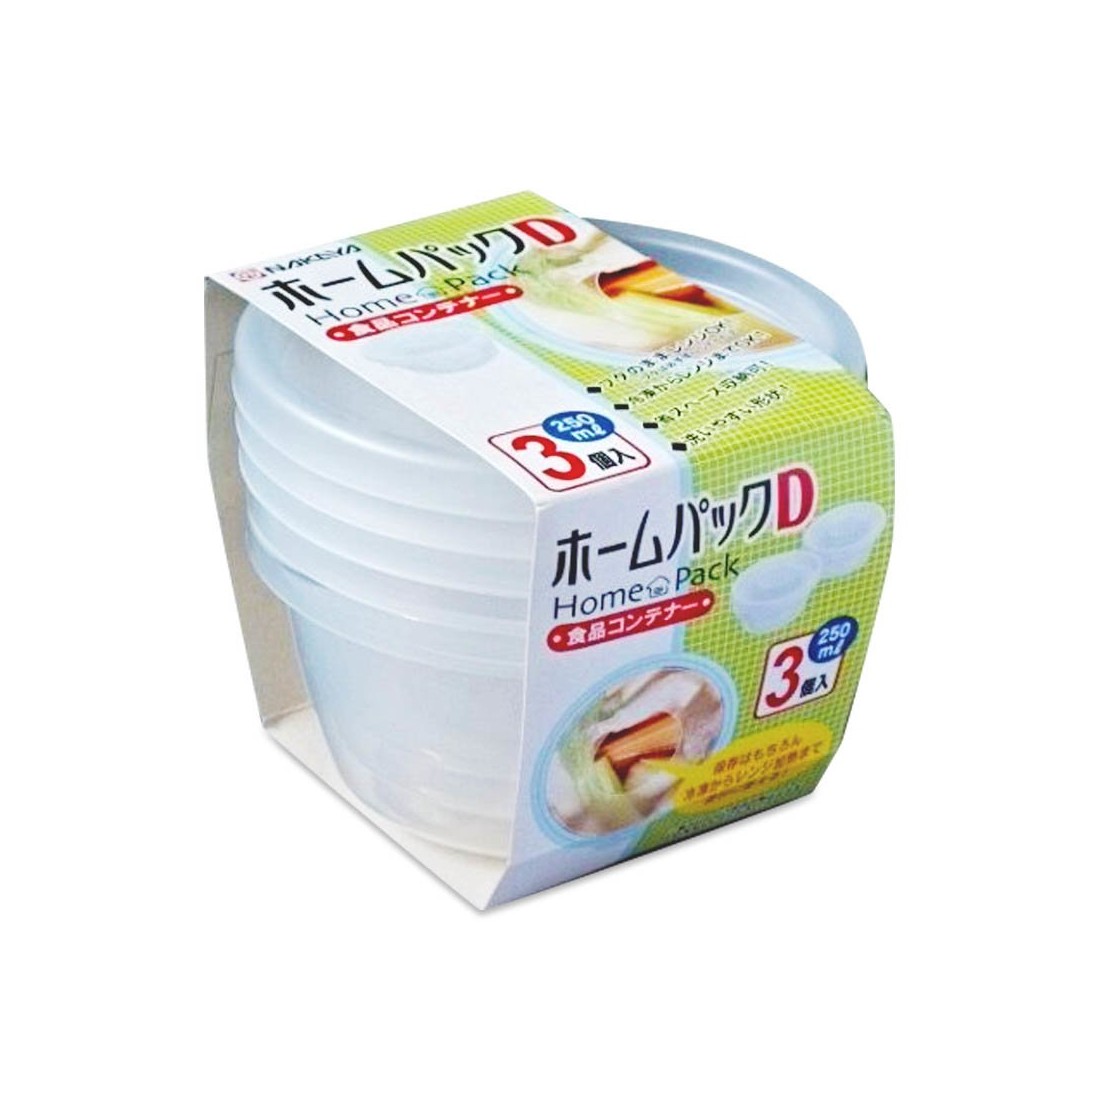 Bộ 3 hộp nhựa đựng thực phẩm 250ml - Hàng nội địa Nhật Bản